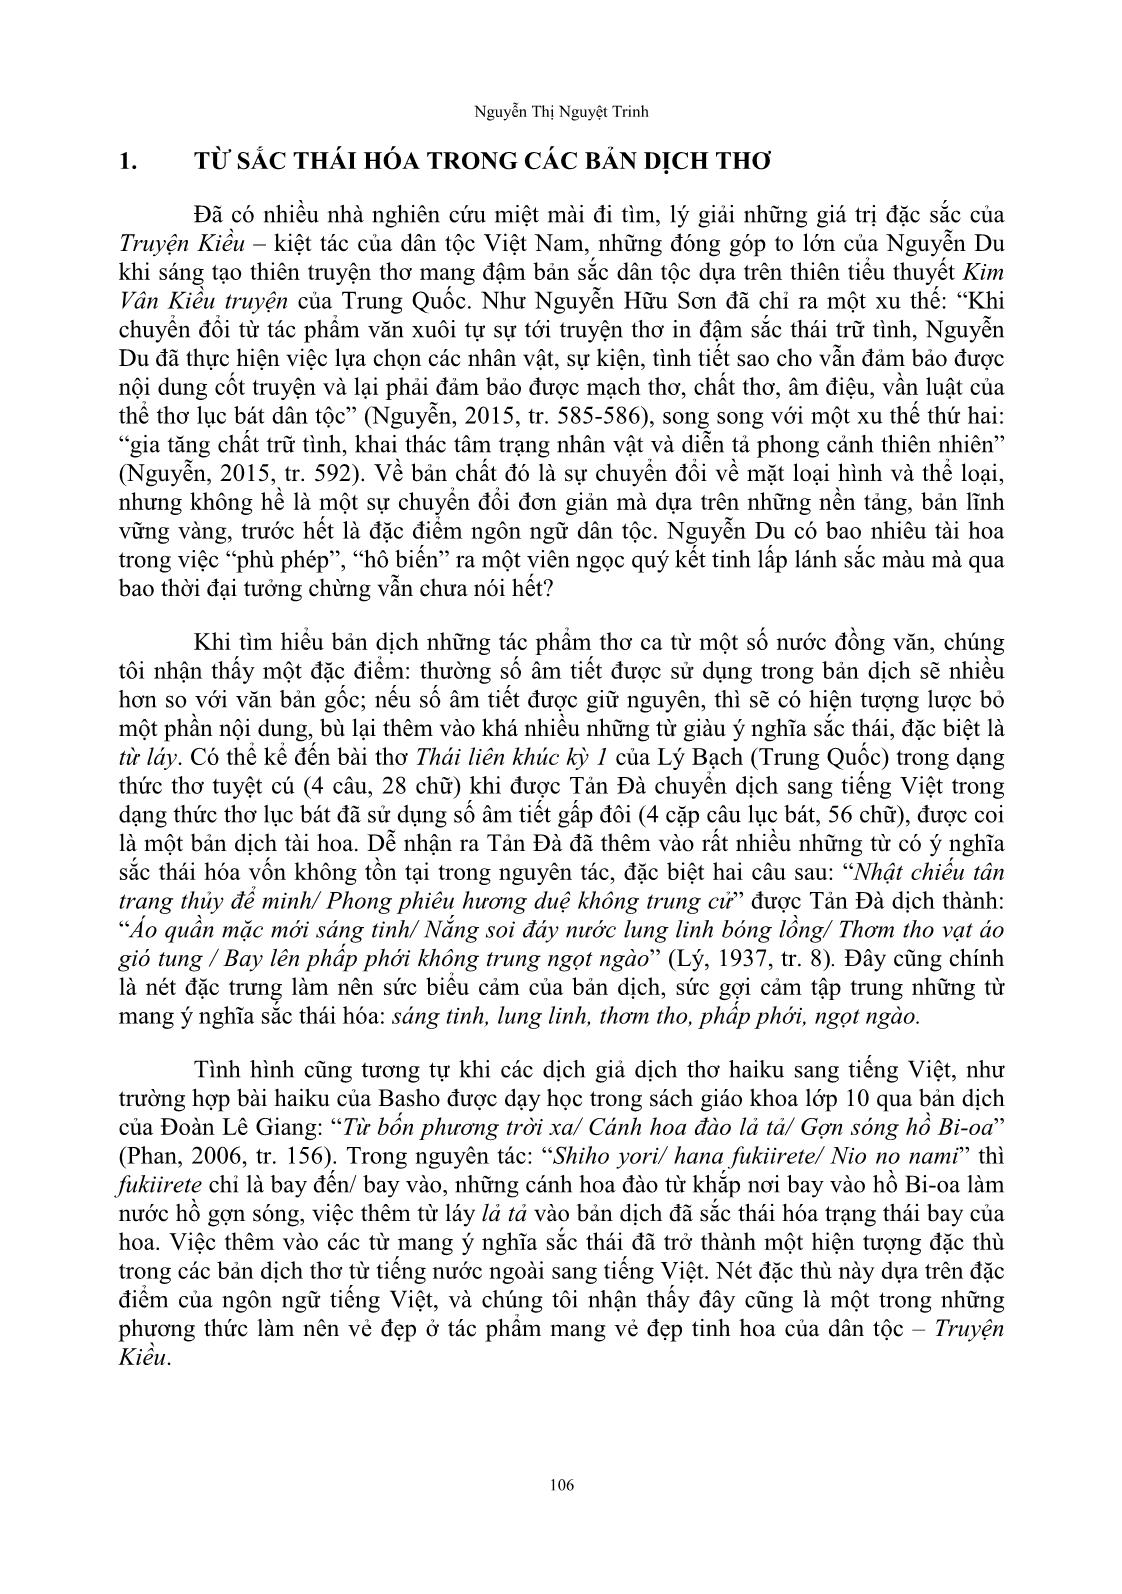 Sắc thái hóa ngôn ngữ thơ trong truyện Kiều của Nguyễn Du trang 3